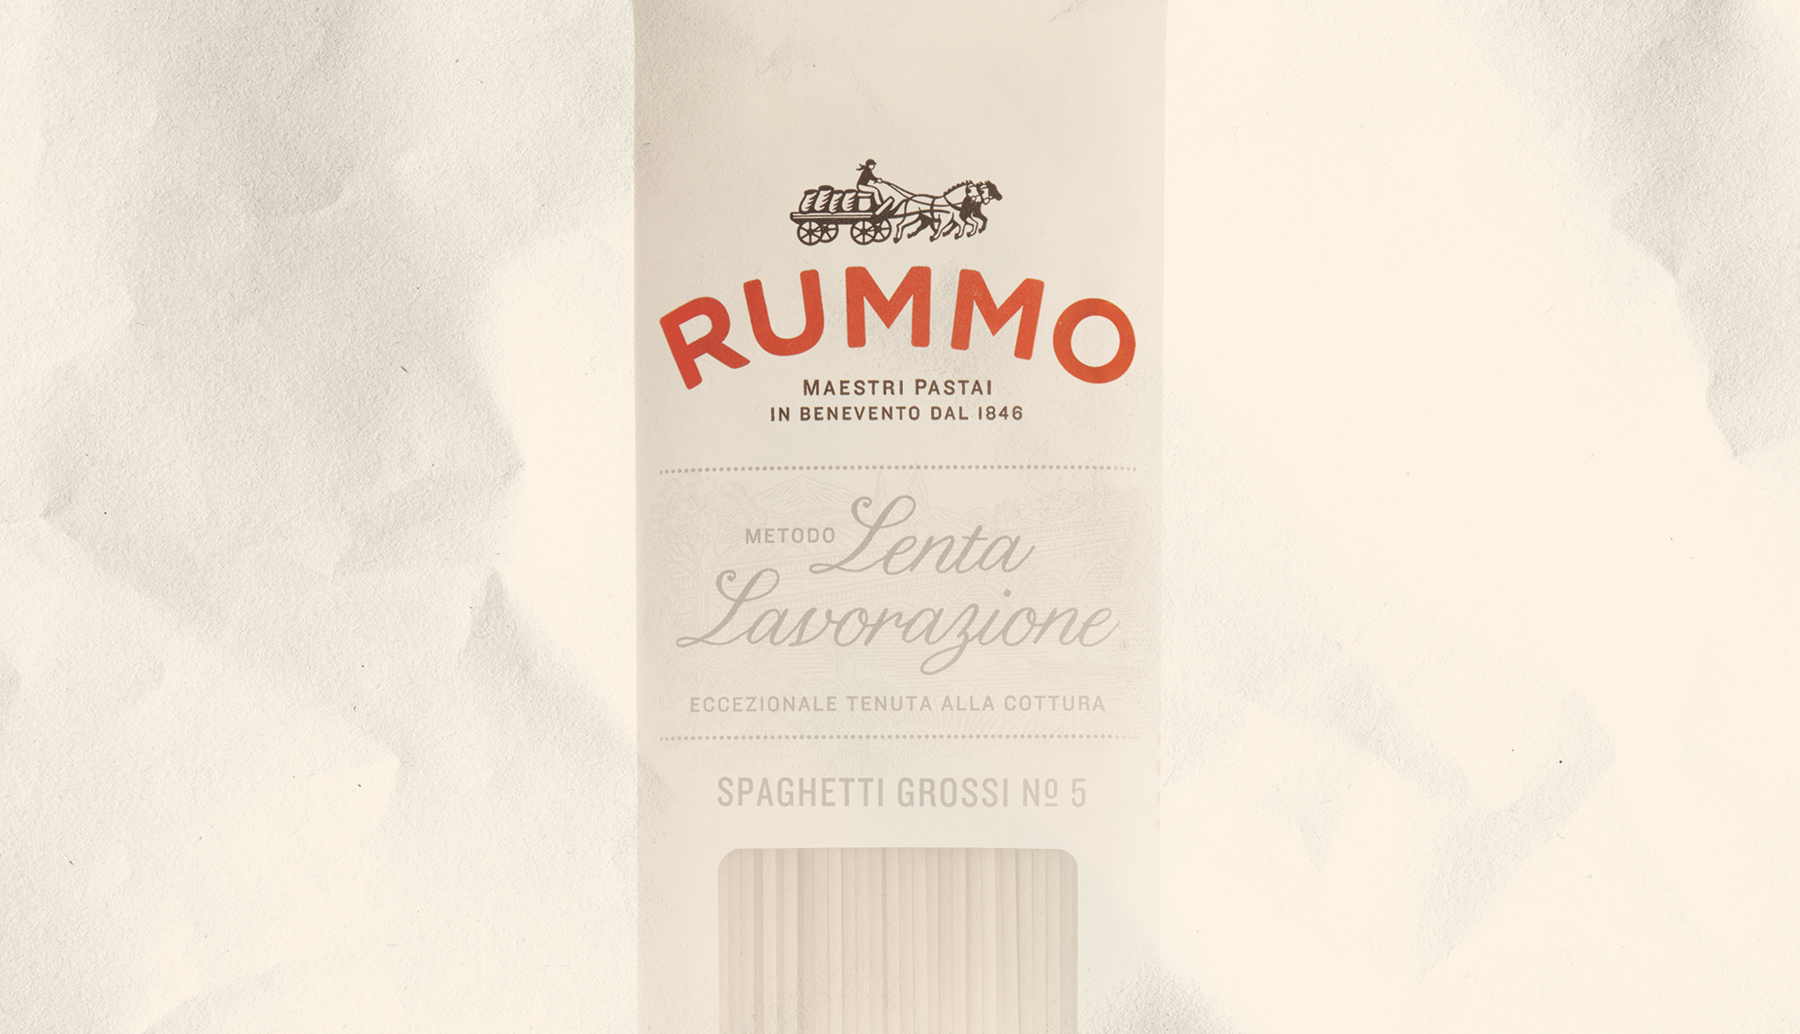 Rummo Pasta - Stanley's Wet Goods